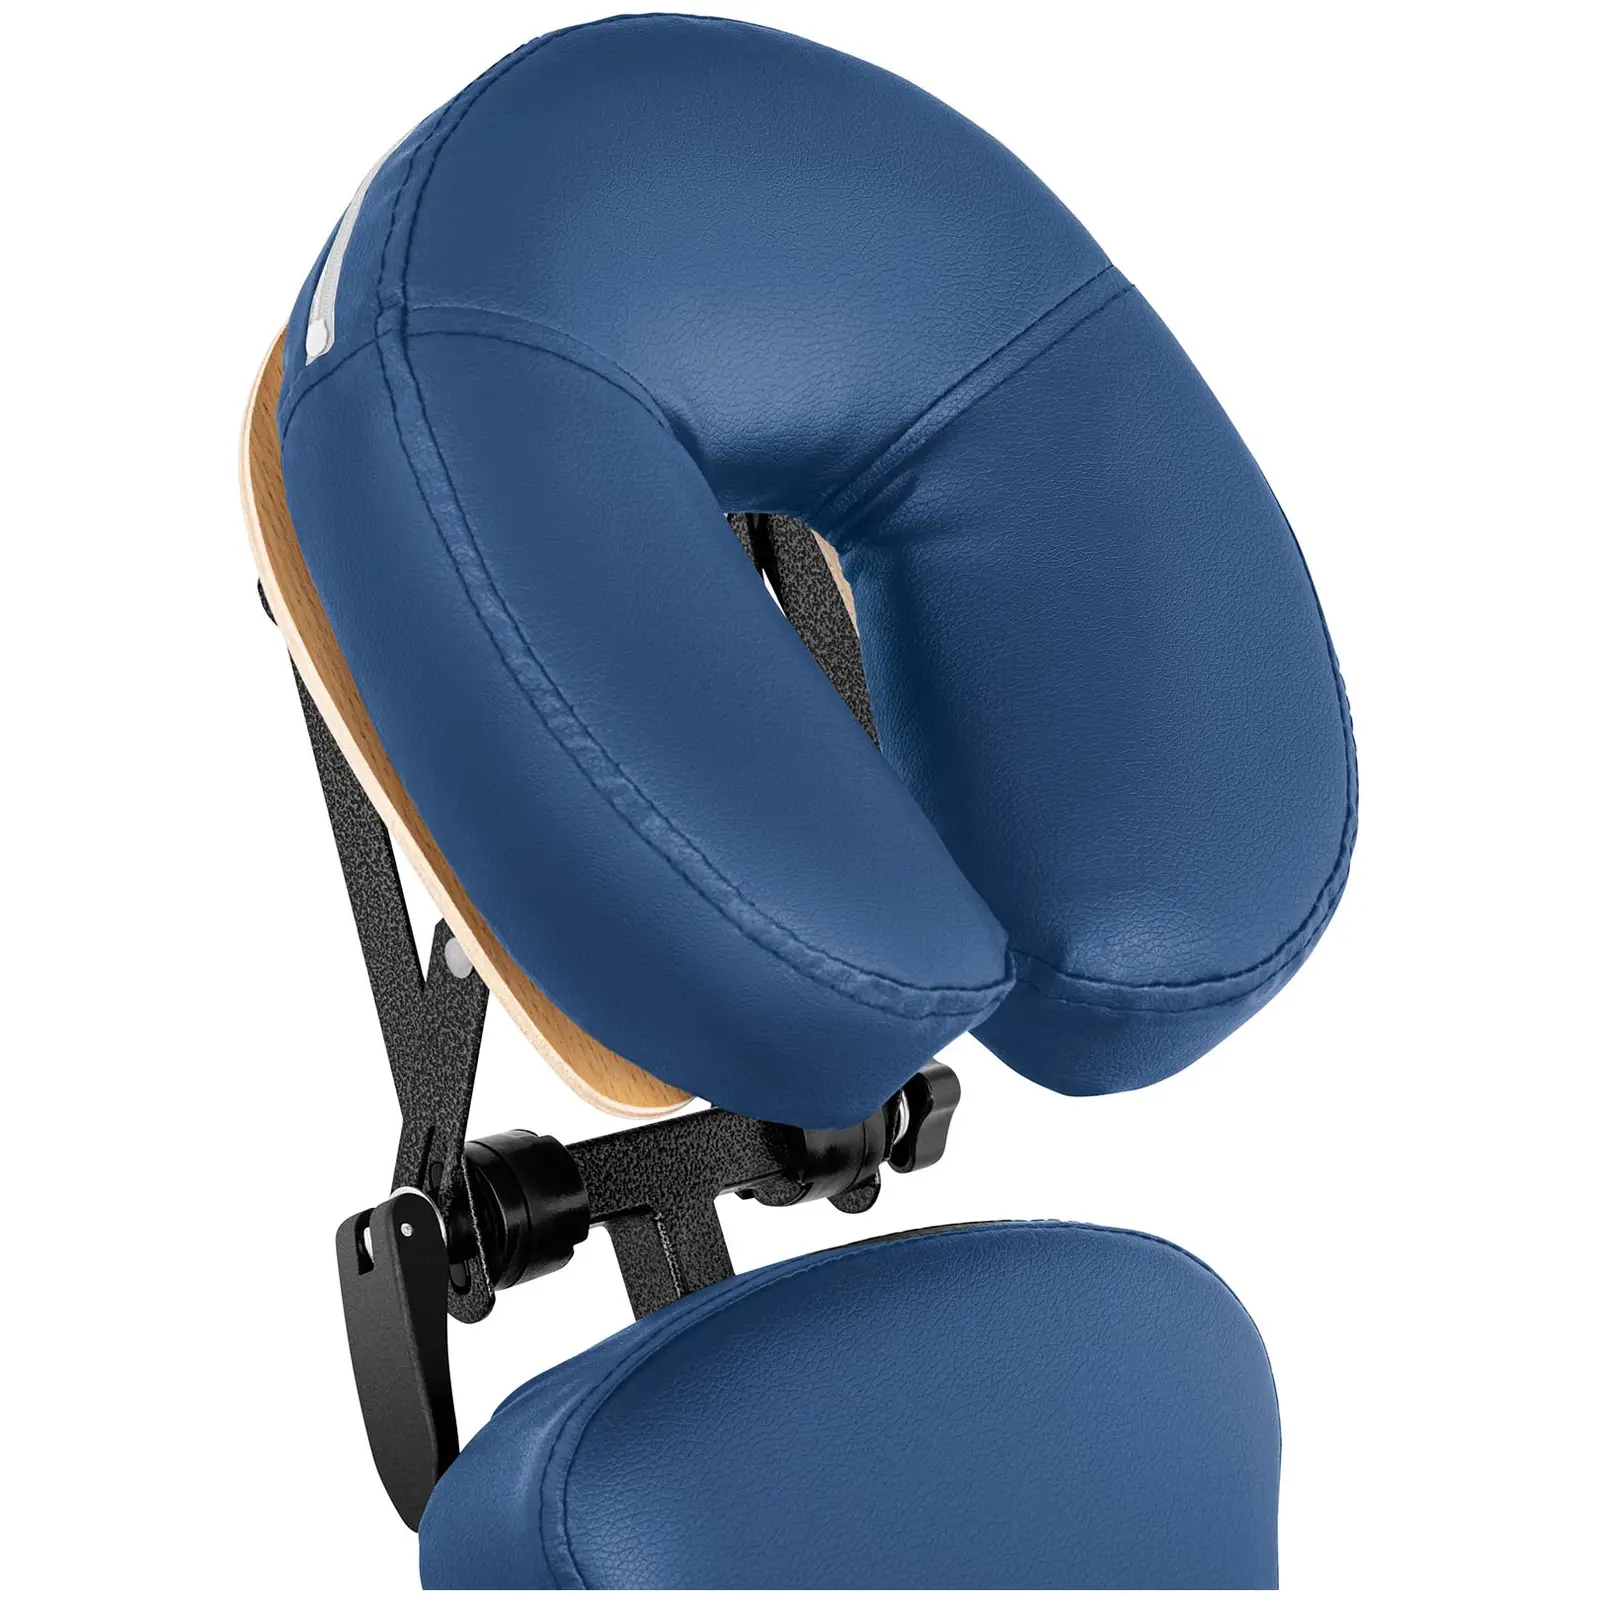 Massagestuhl klappbar - 130 kg - Blau - 5